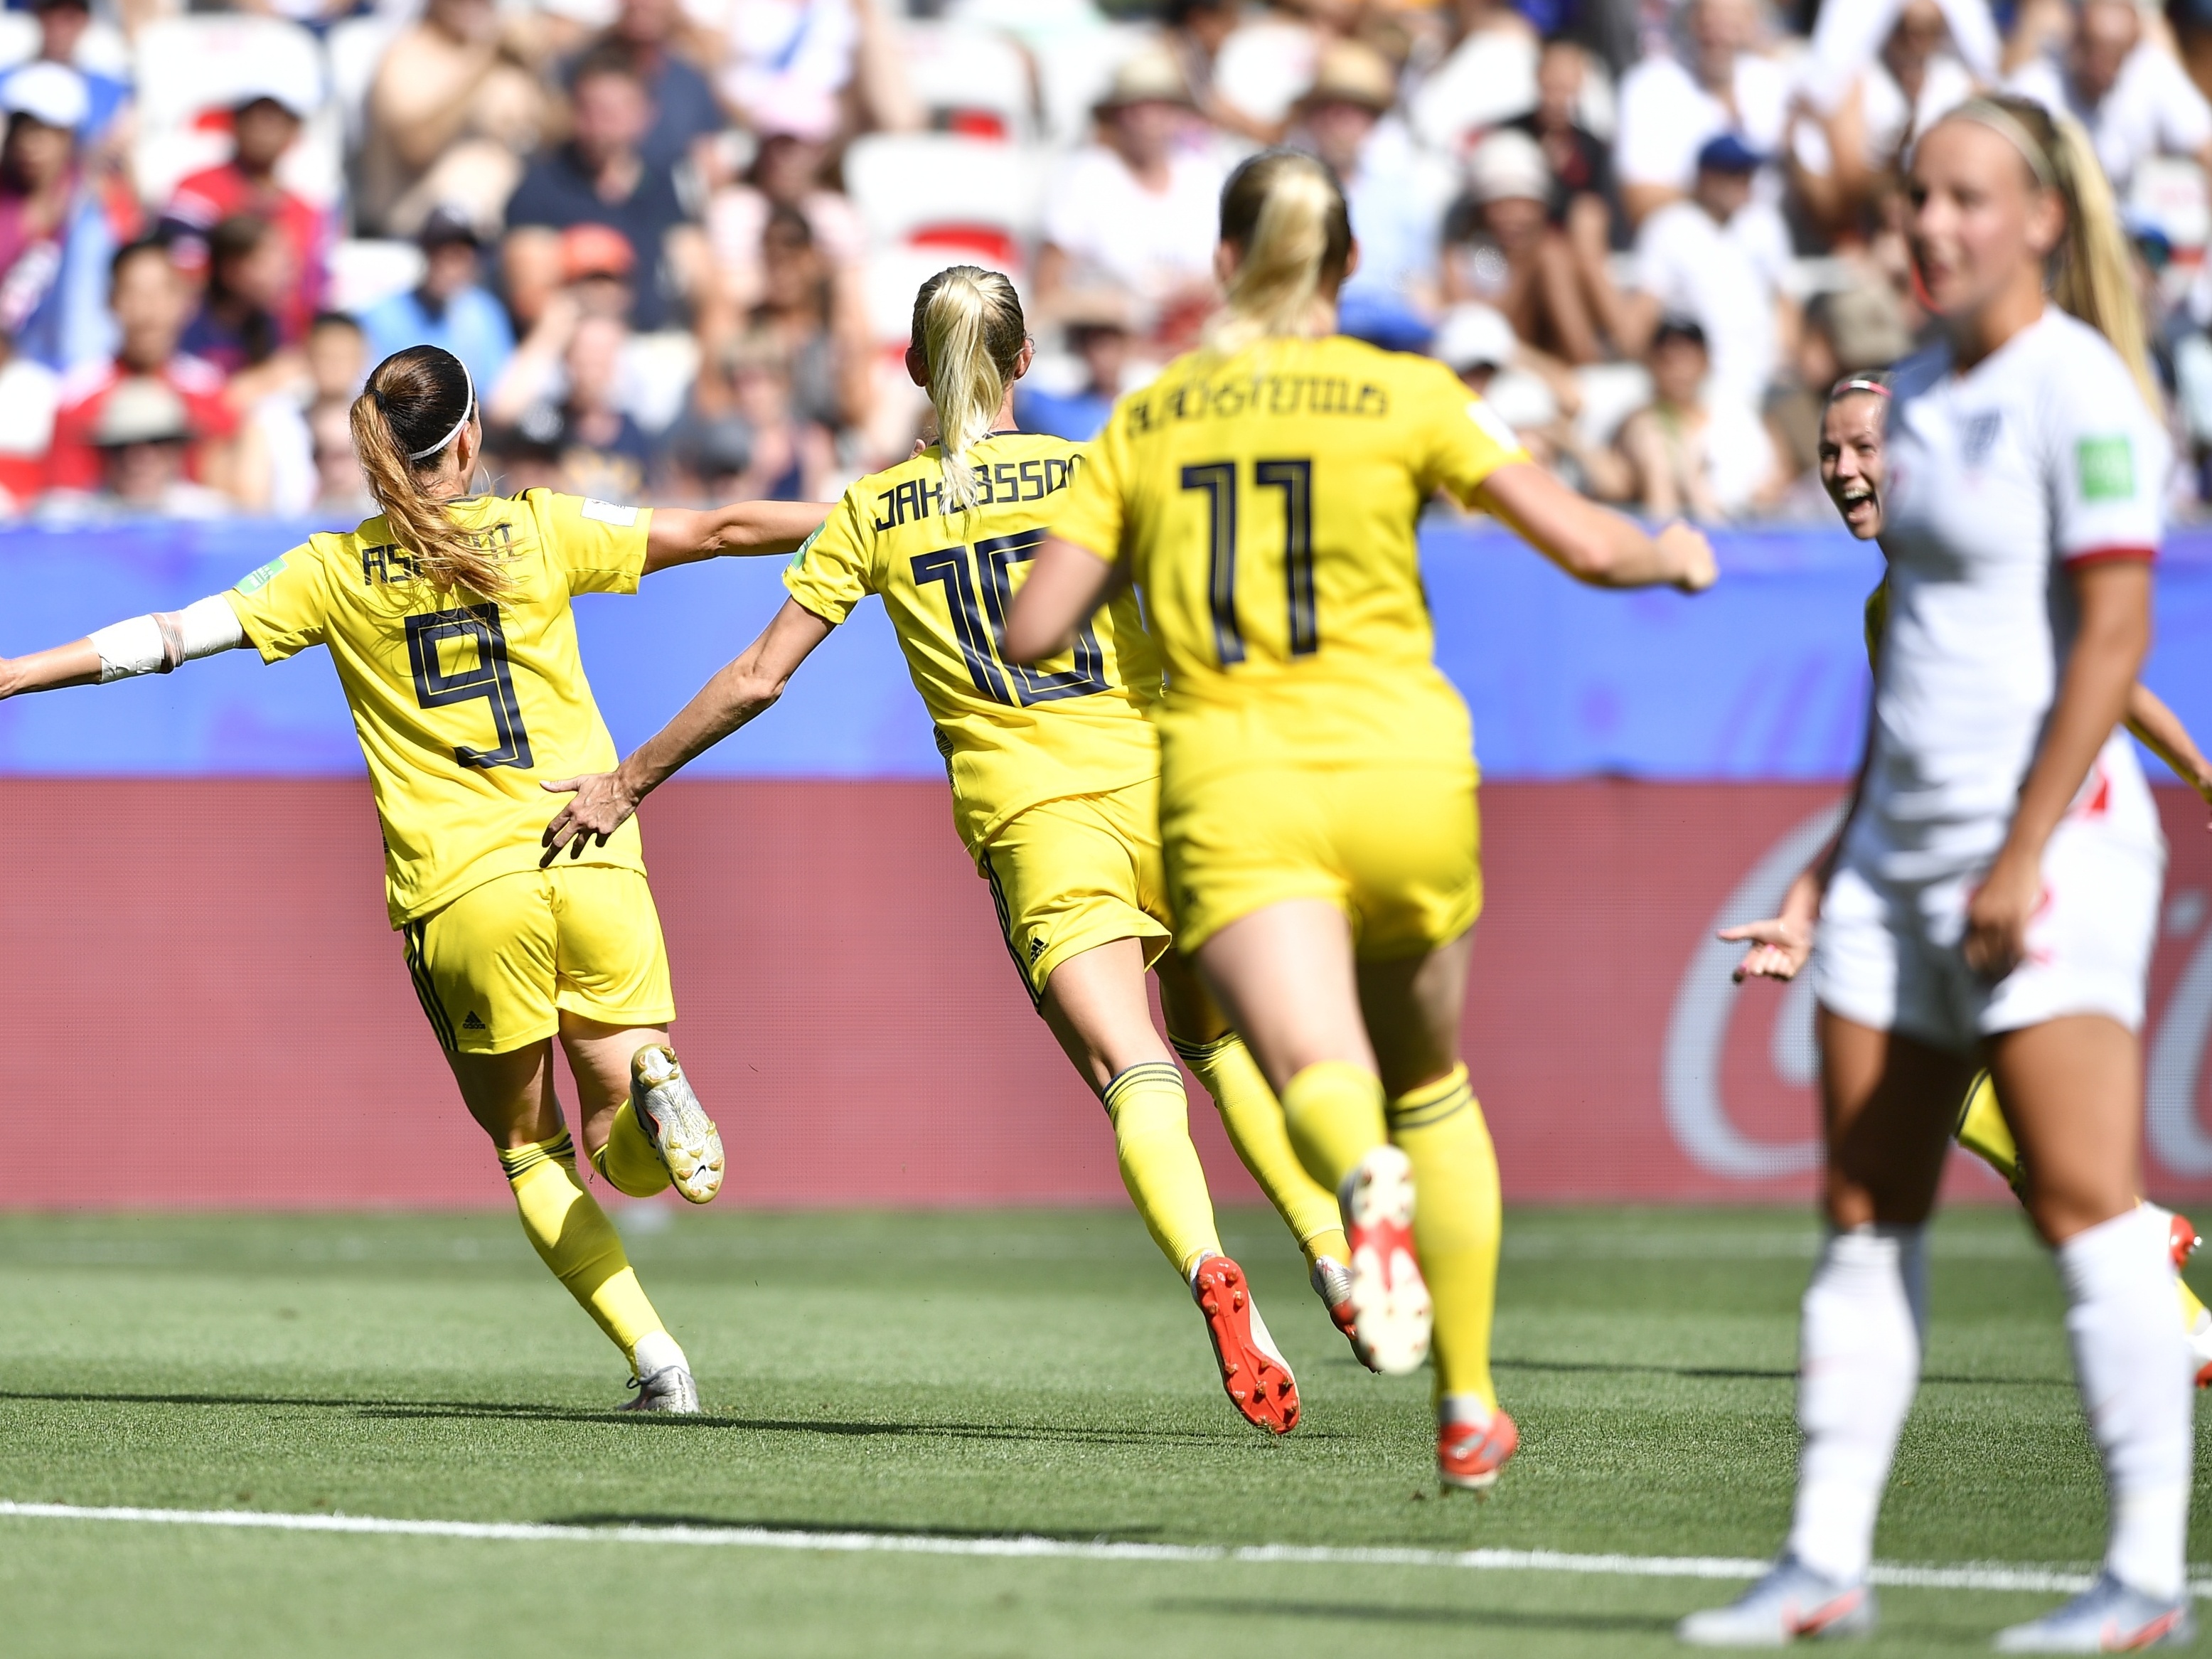 Suécia vence Austrália e conquista o terceiro lugar na Copa do Mundo  Feminina